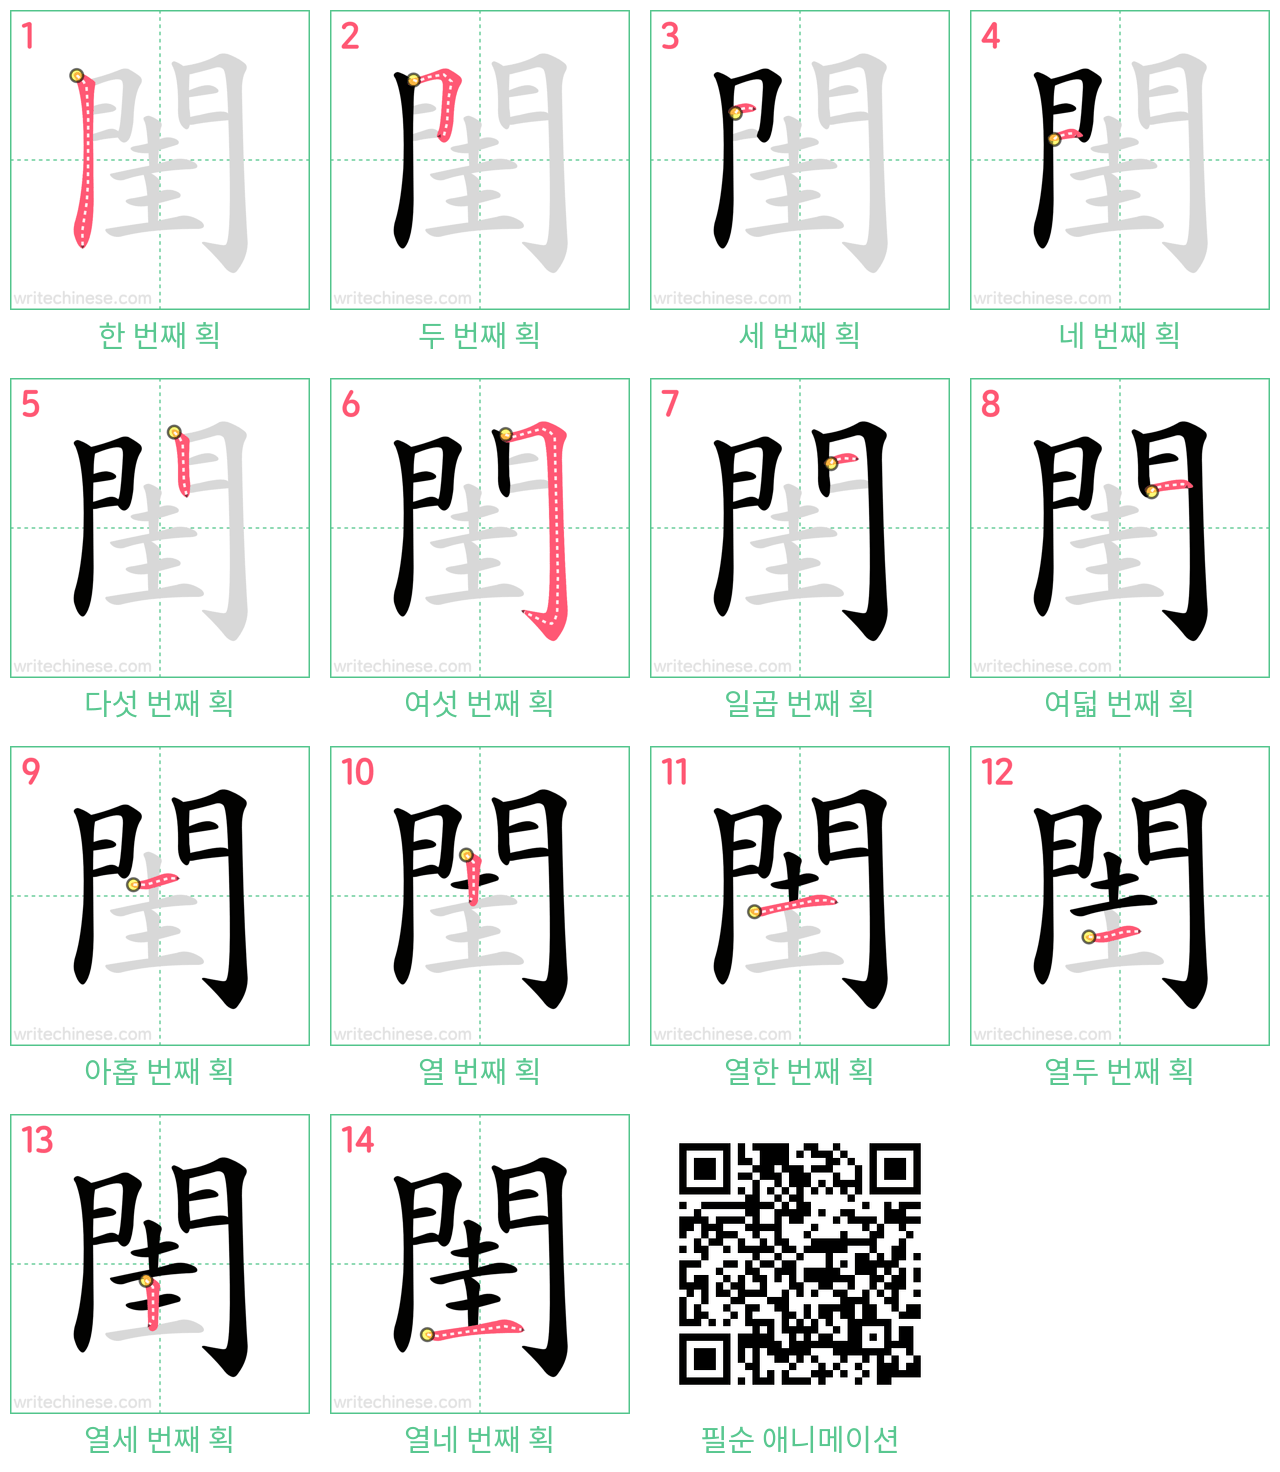 閨 step-by-step stroke order diagrams